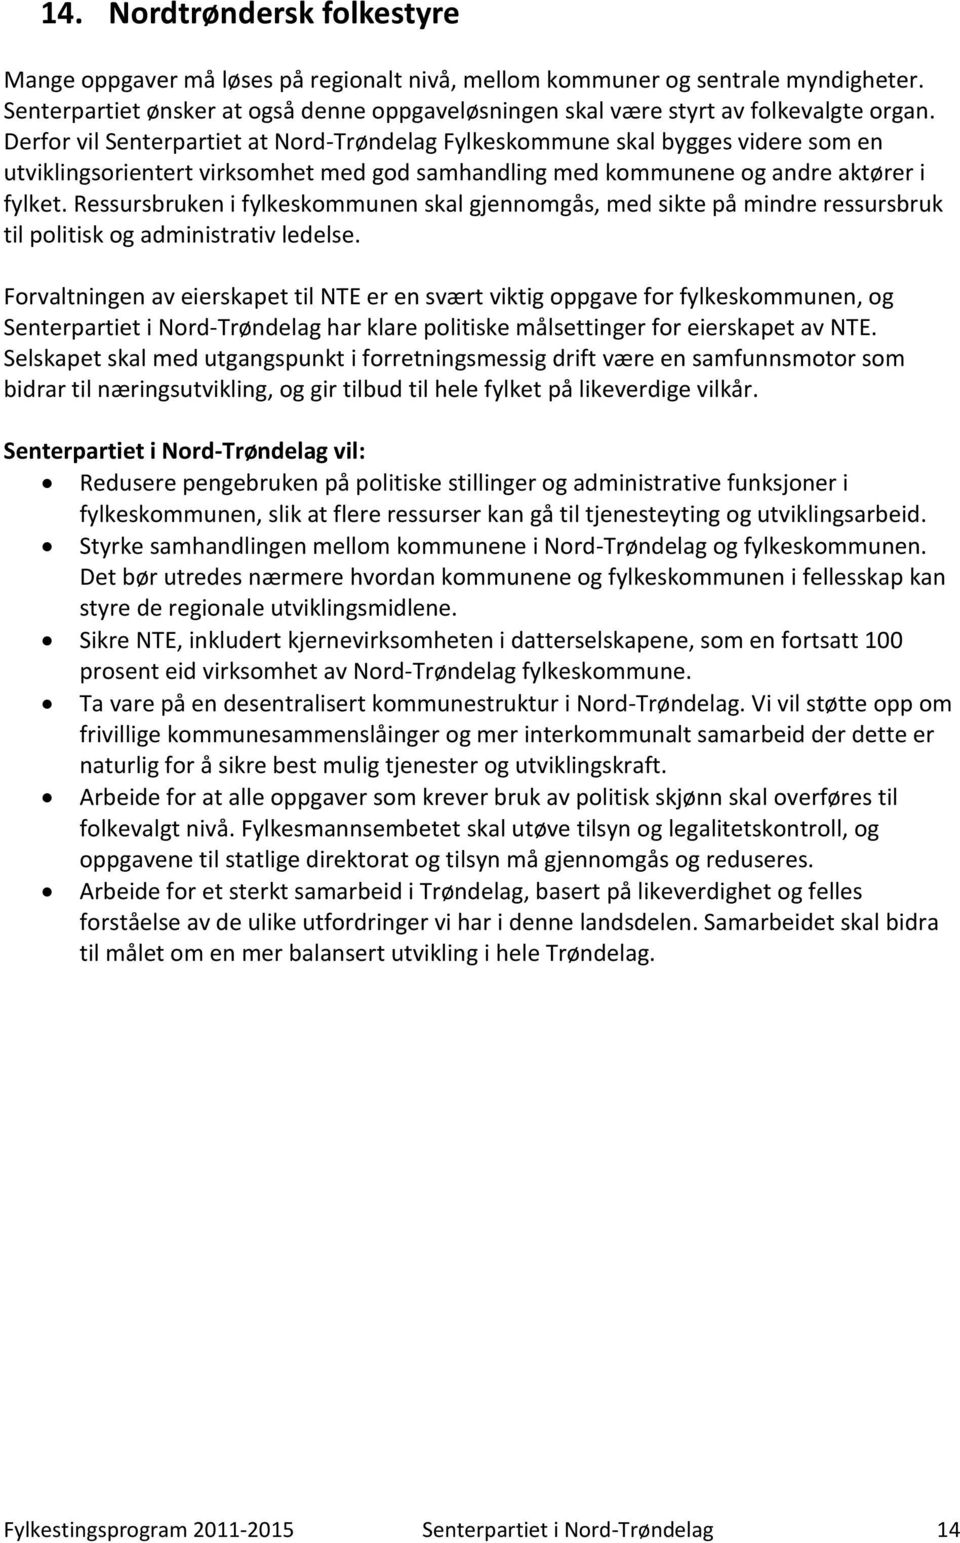 Derfor vil Senterpartiet at Nord-Trøndelag Fylkeskommune skal bygges videre som en utviklingsorientert virksomhet med god samhandling med kommunene og andre aktører i fylket.